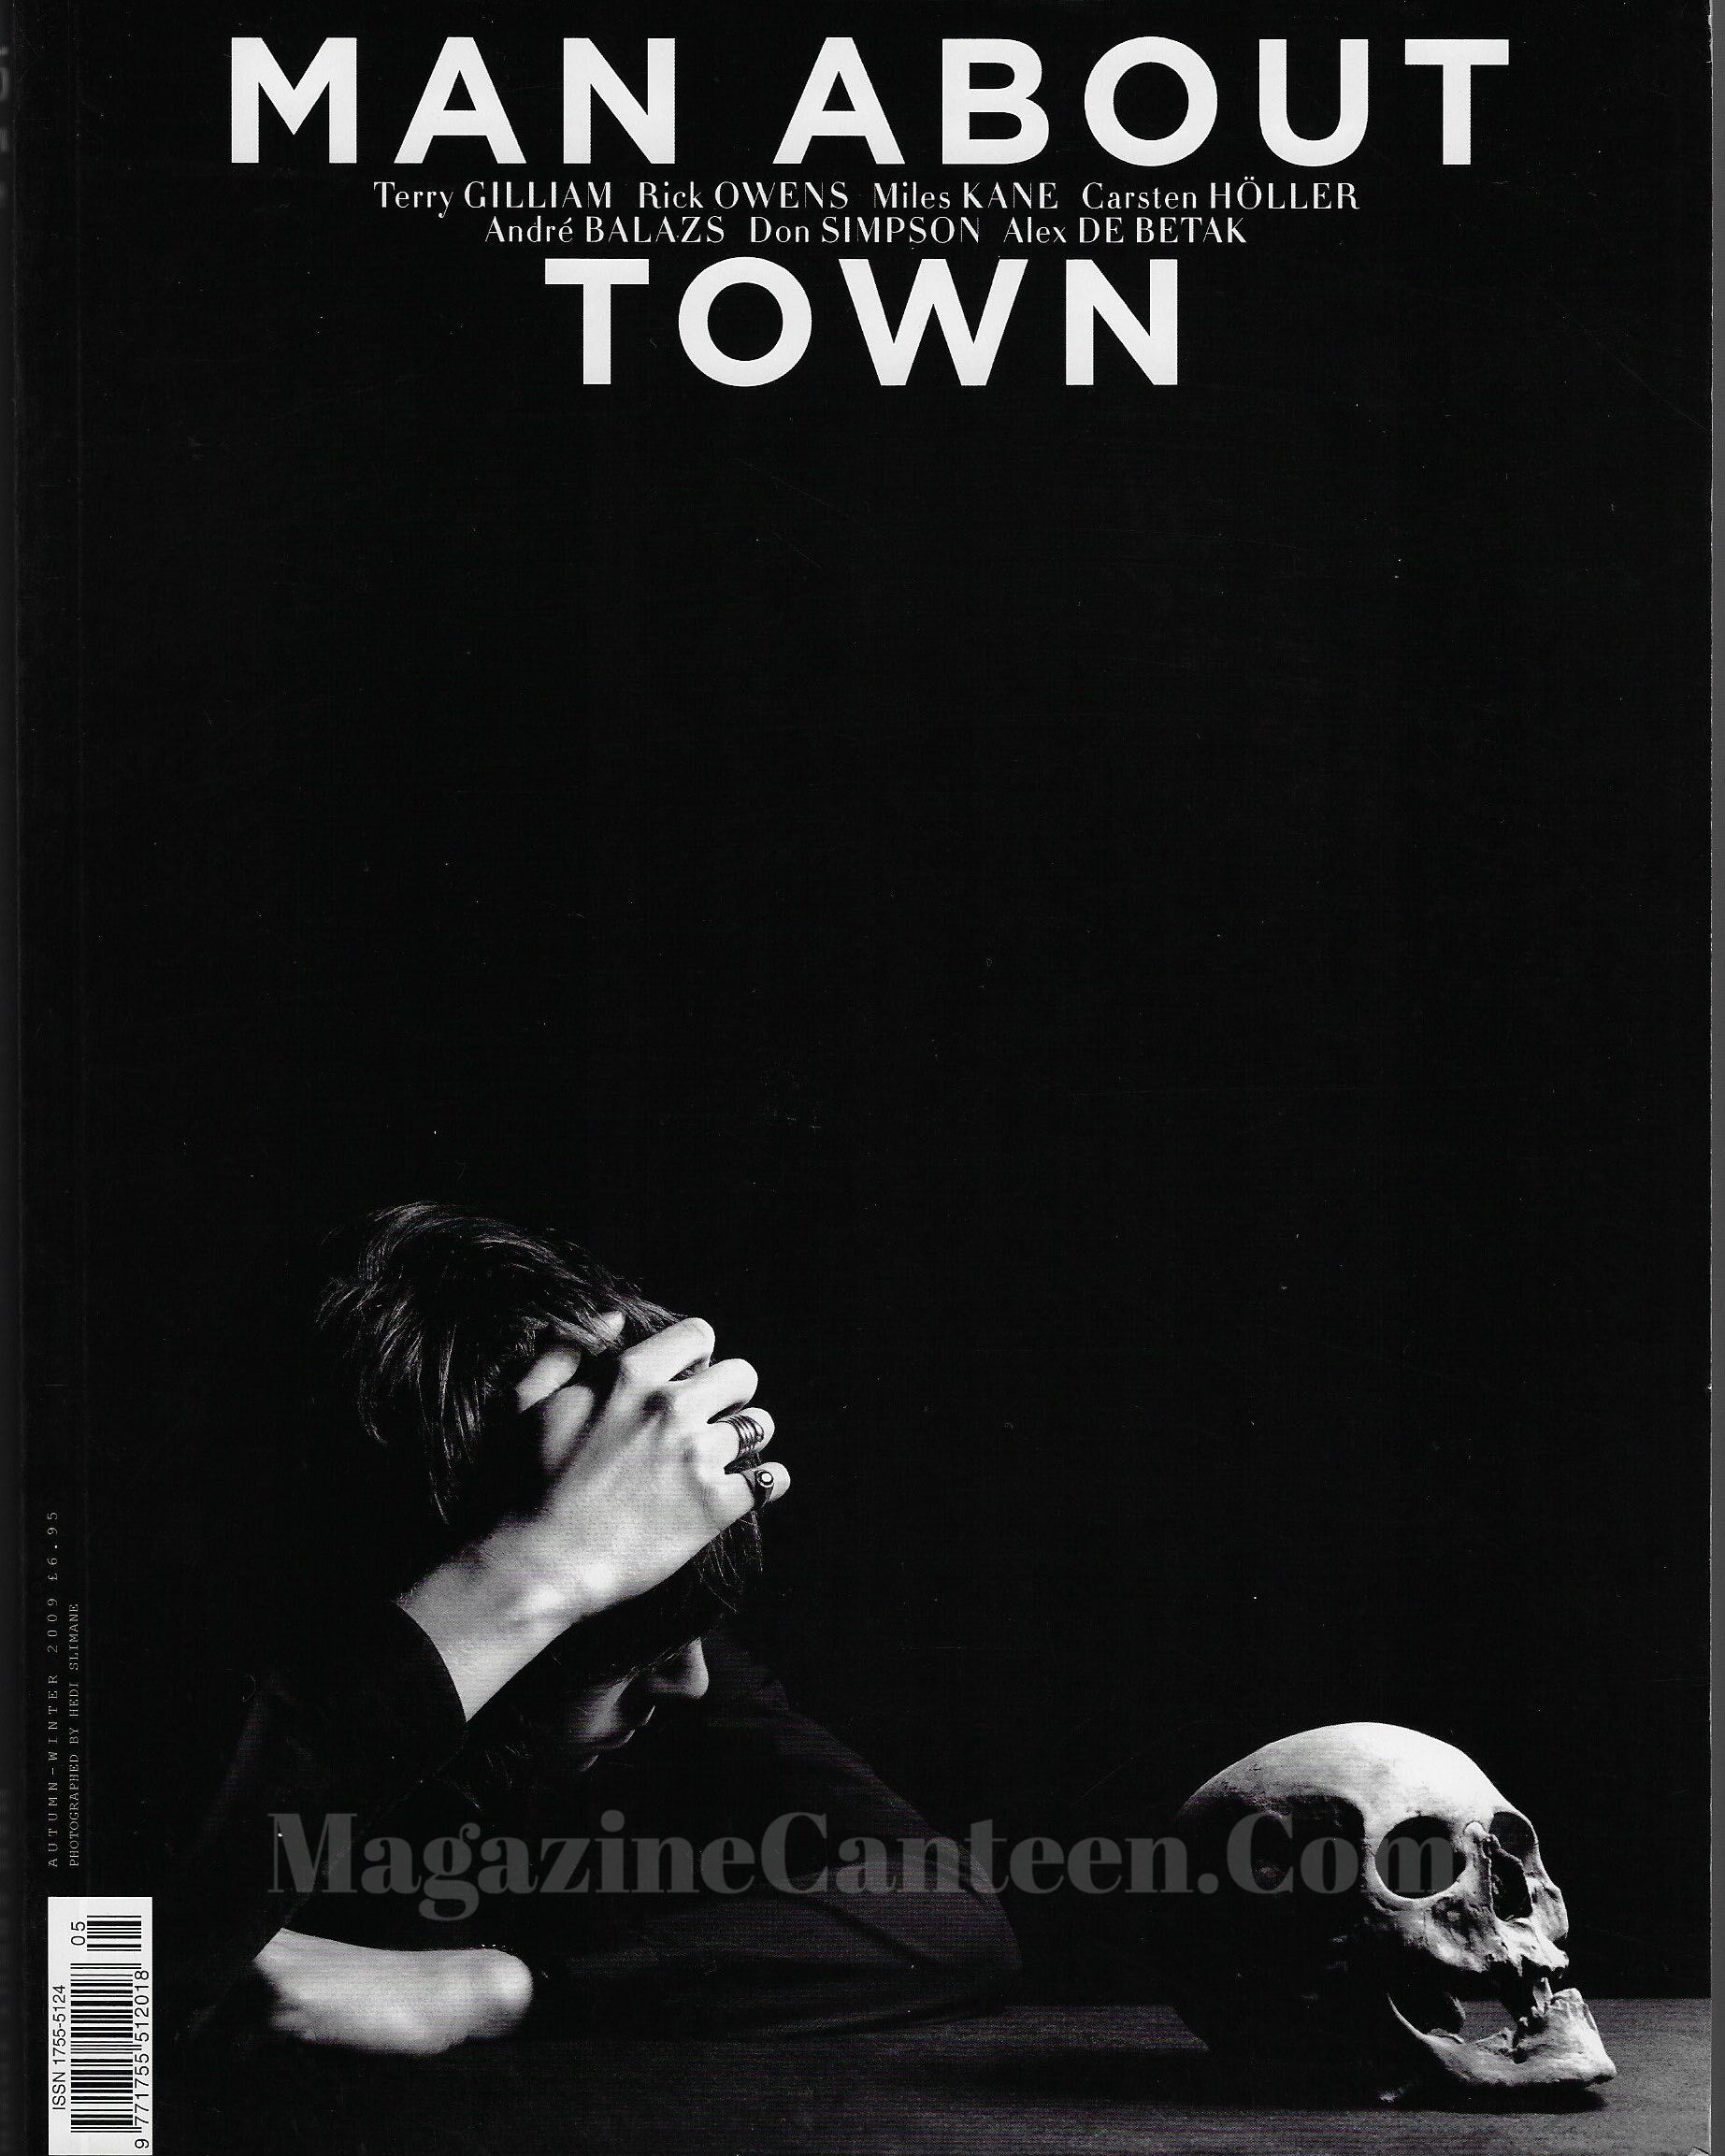 Man About Town Magazine - Miles Kane 2009